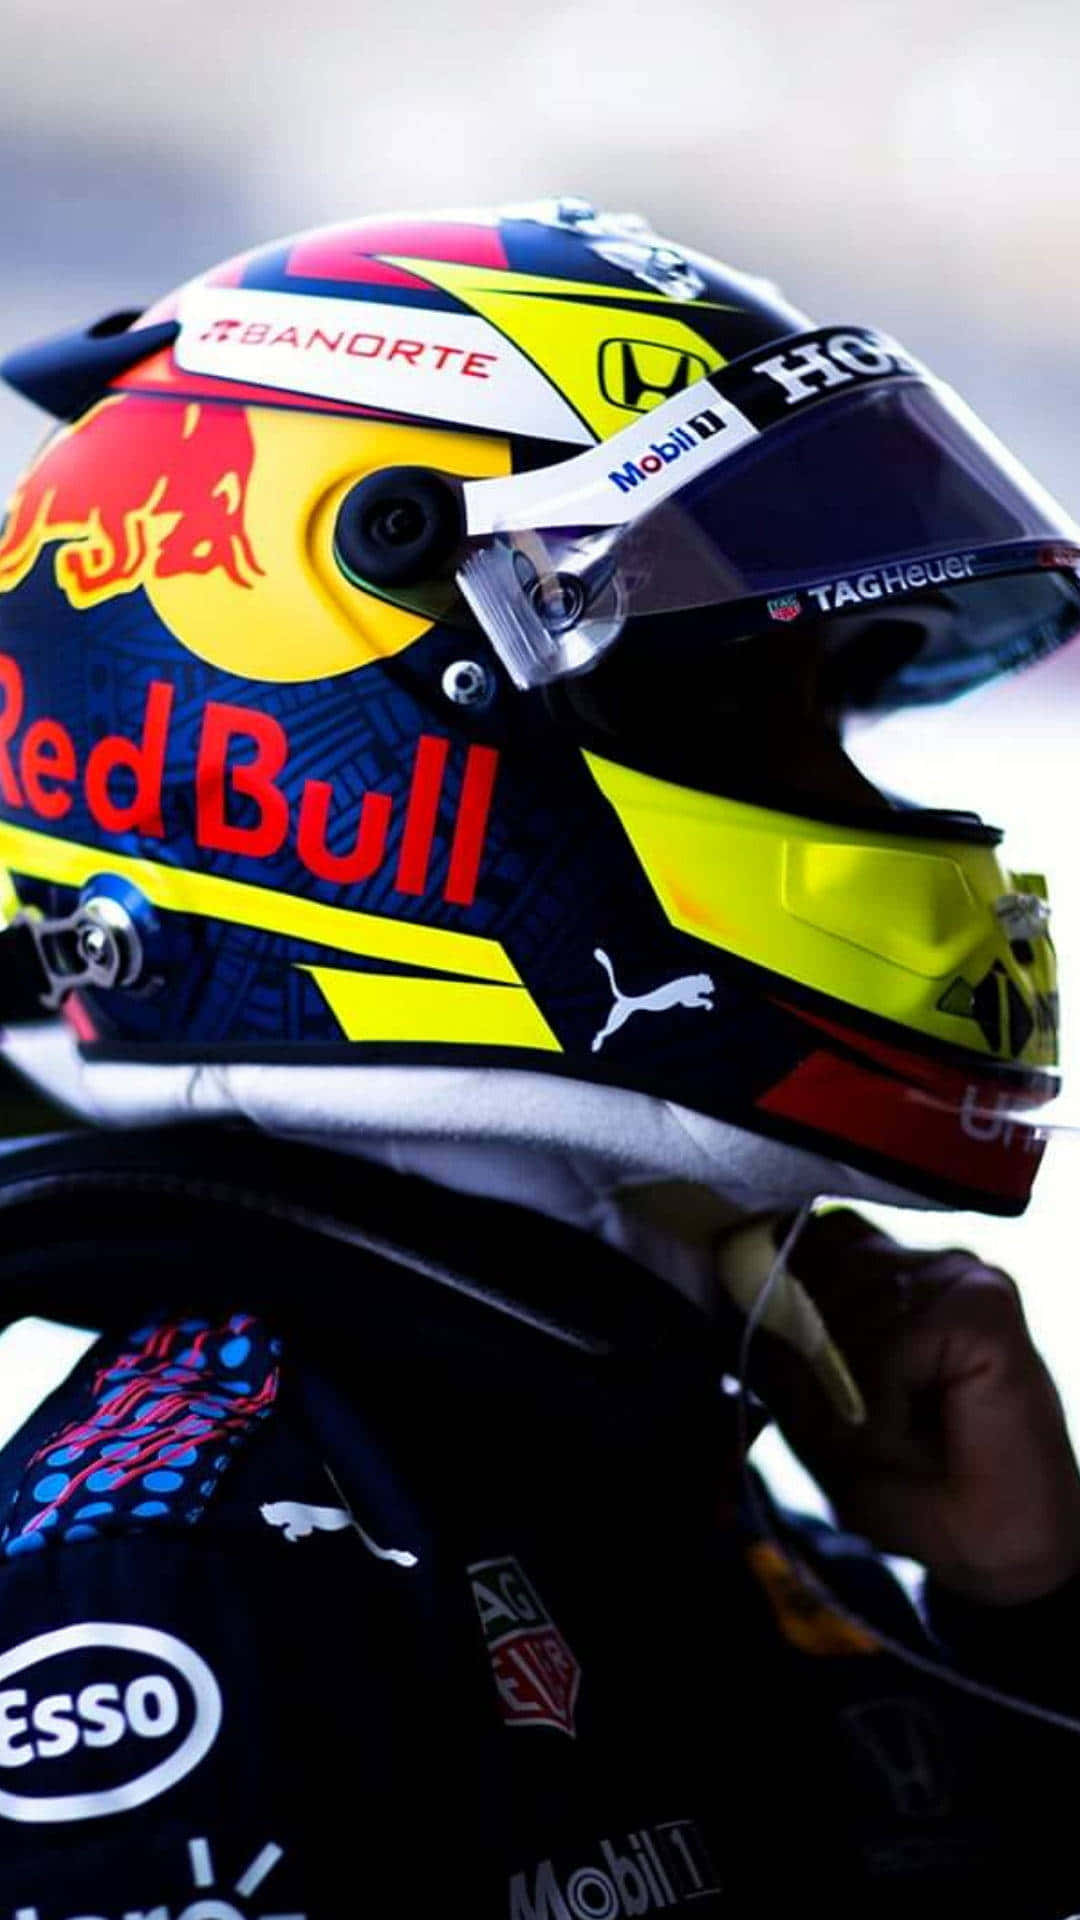 Einred Bull Racing Fahrer Trägt Einen Helm. Wallpaper